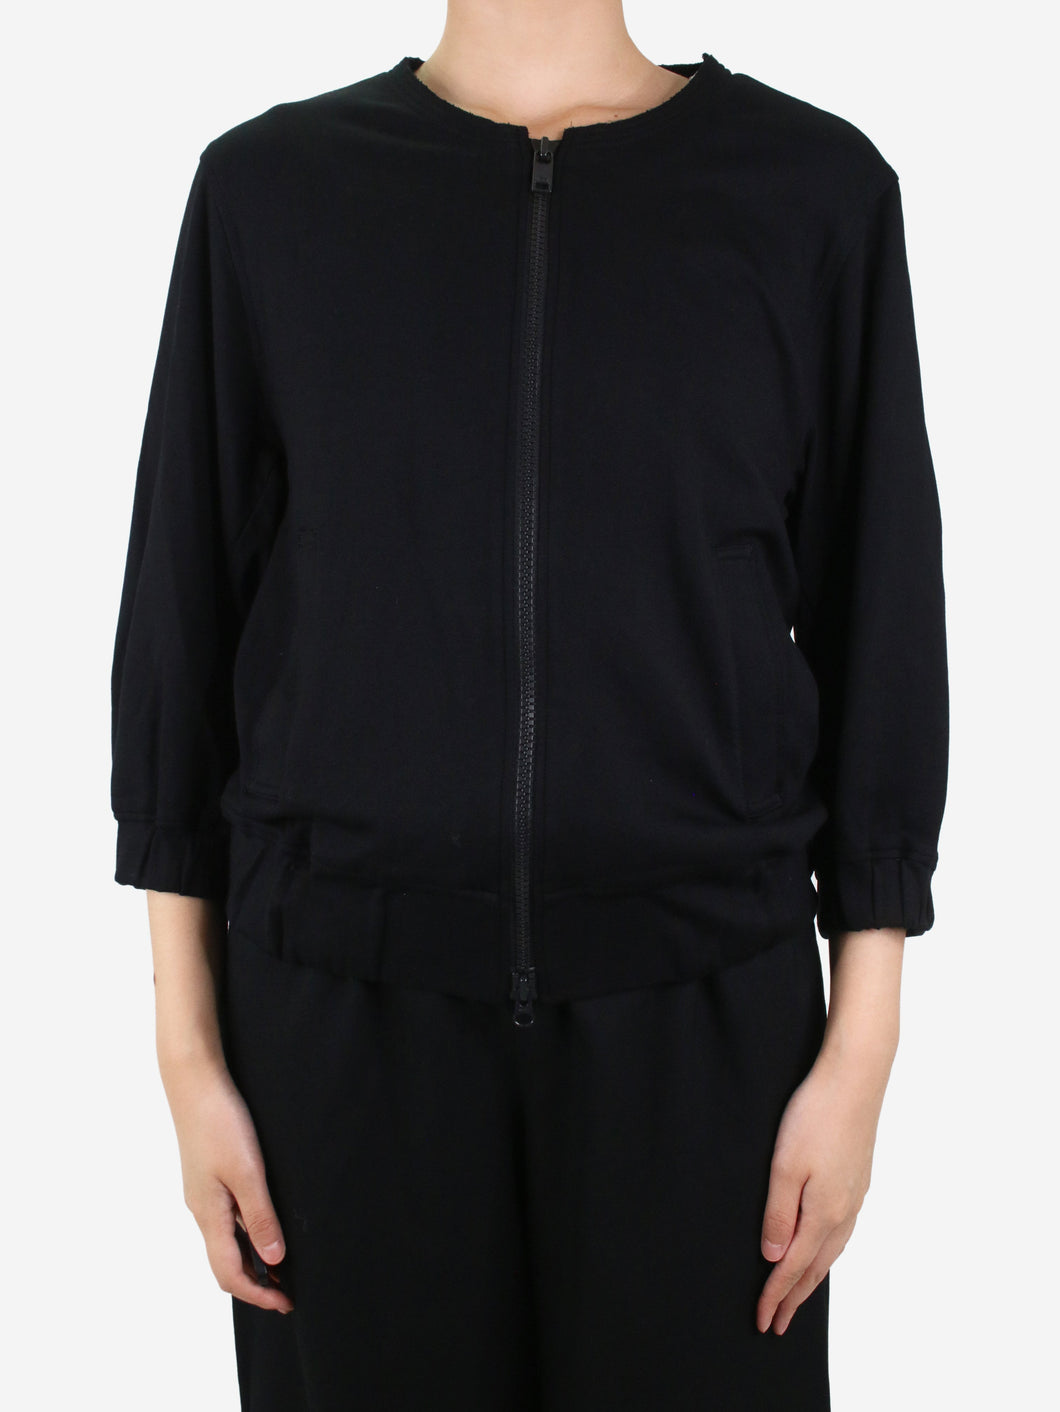 Black bomber jacket - size S Coats & Jackets Adidas x Yohji Yamamoto 